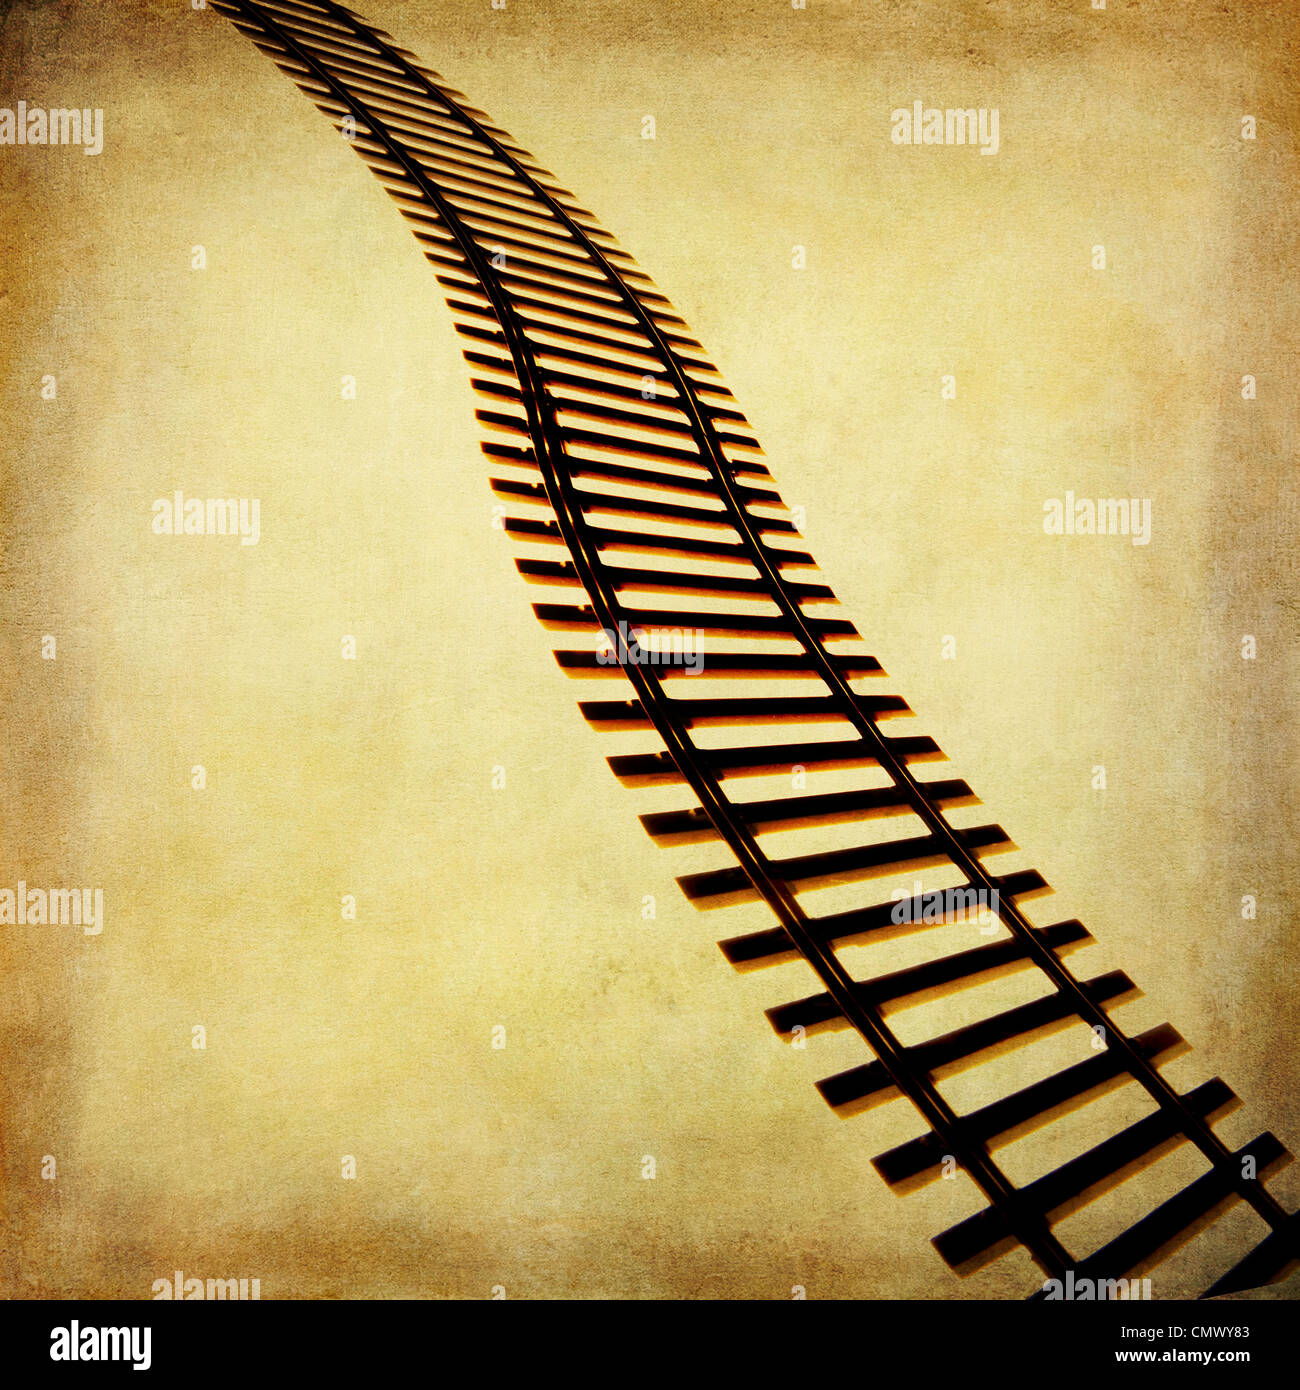 Voie de chemin de fer train tracks illustration. Banque D'Images